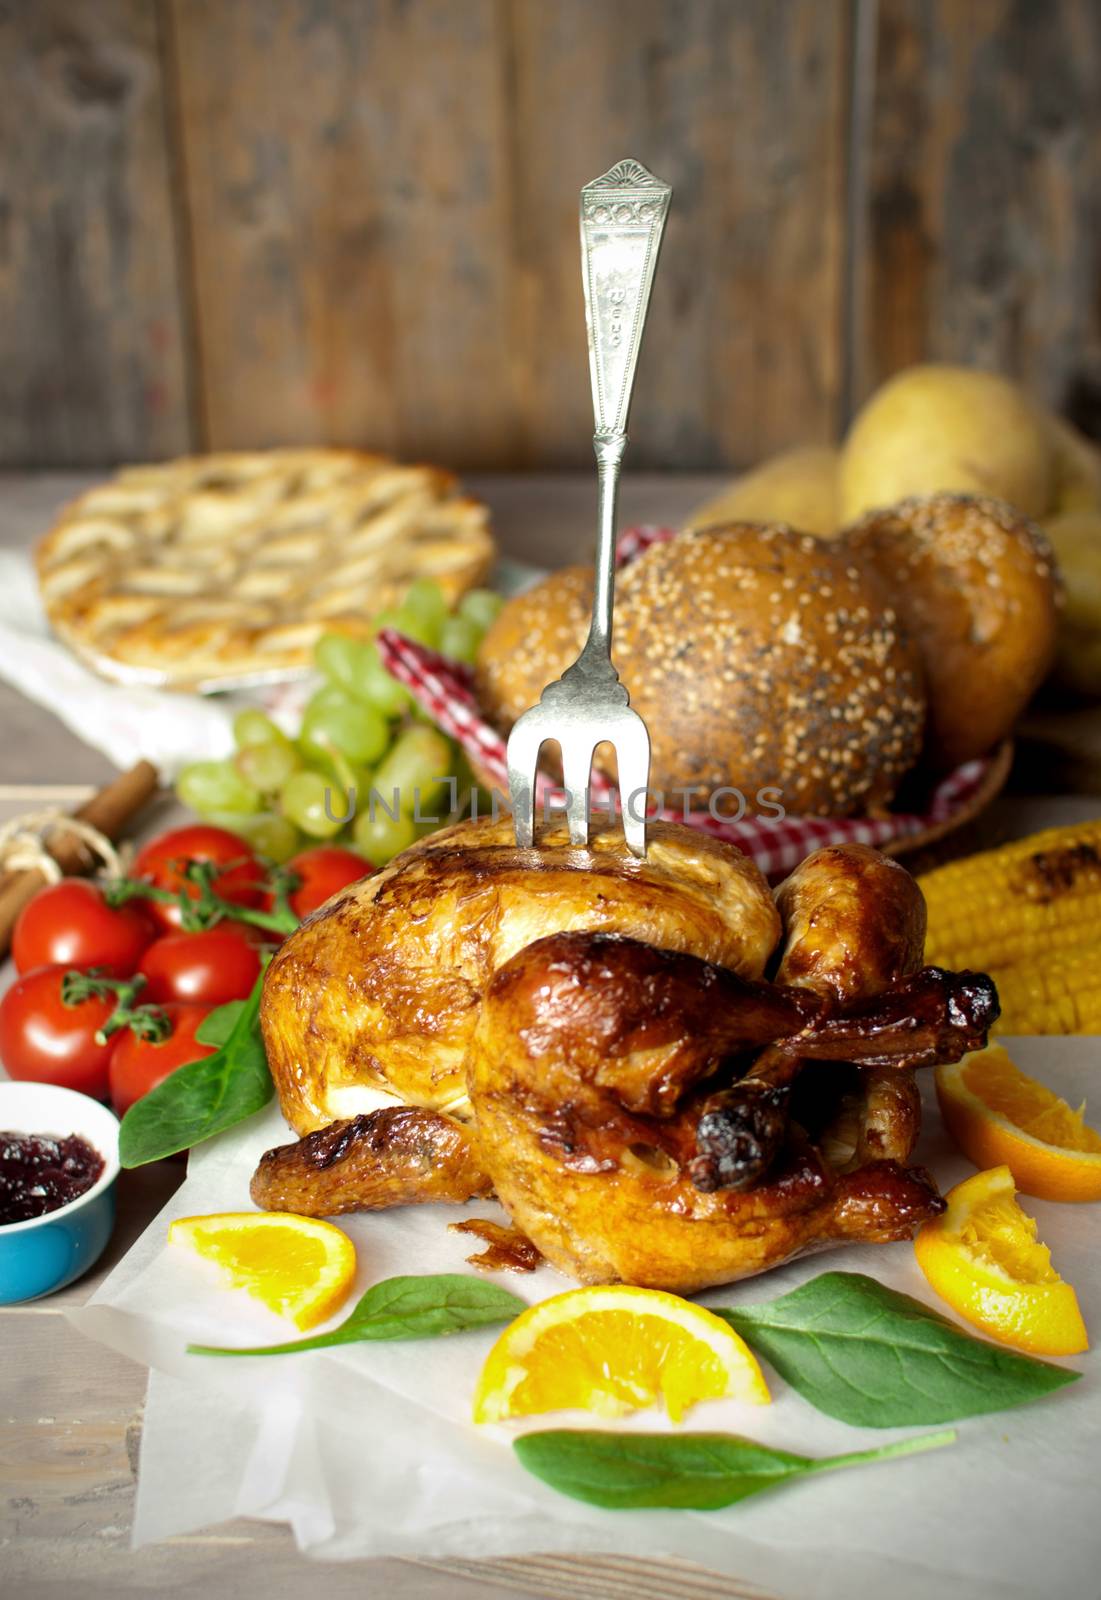 Roast turkey meal by unikpix